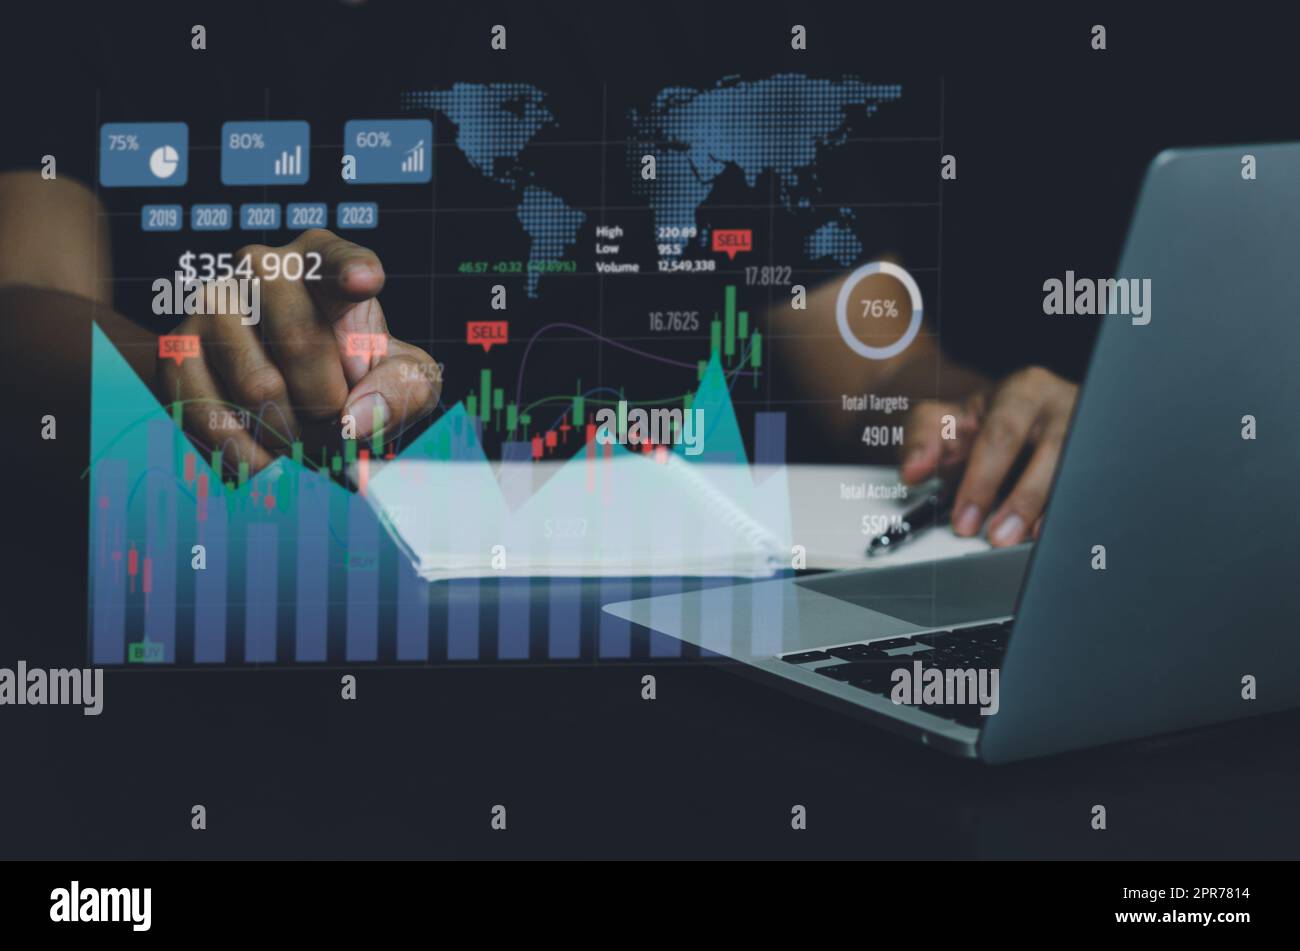 Analyse commerciale et croissance économique Big Data avec graphiques financiers. Concepts de la technologie de tableau de bord de marketing numérique à écran virtuel et de la connexion au réseau économique mondial. Banque D'Images